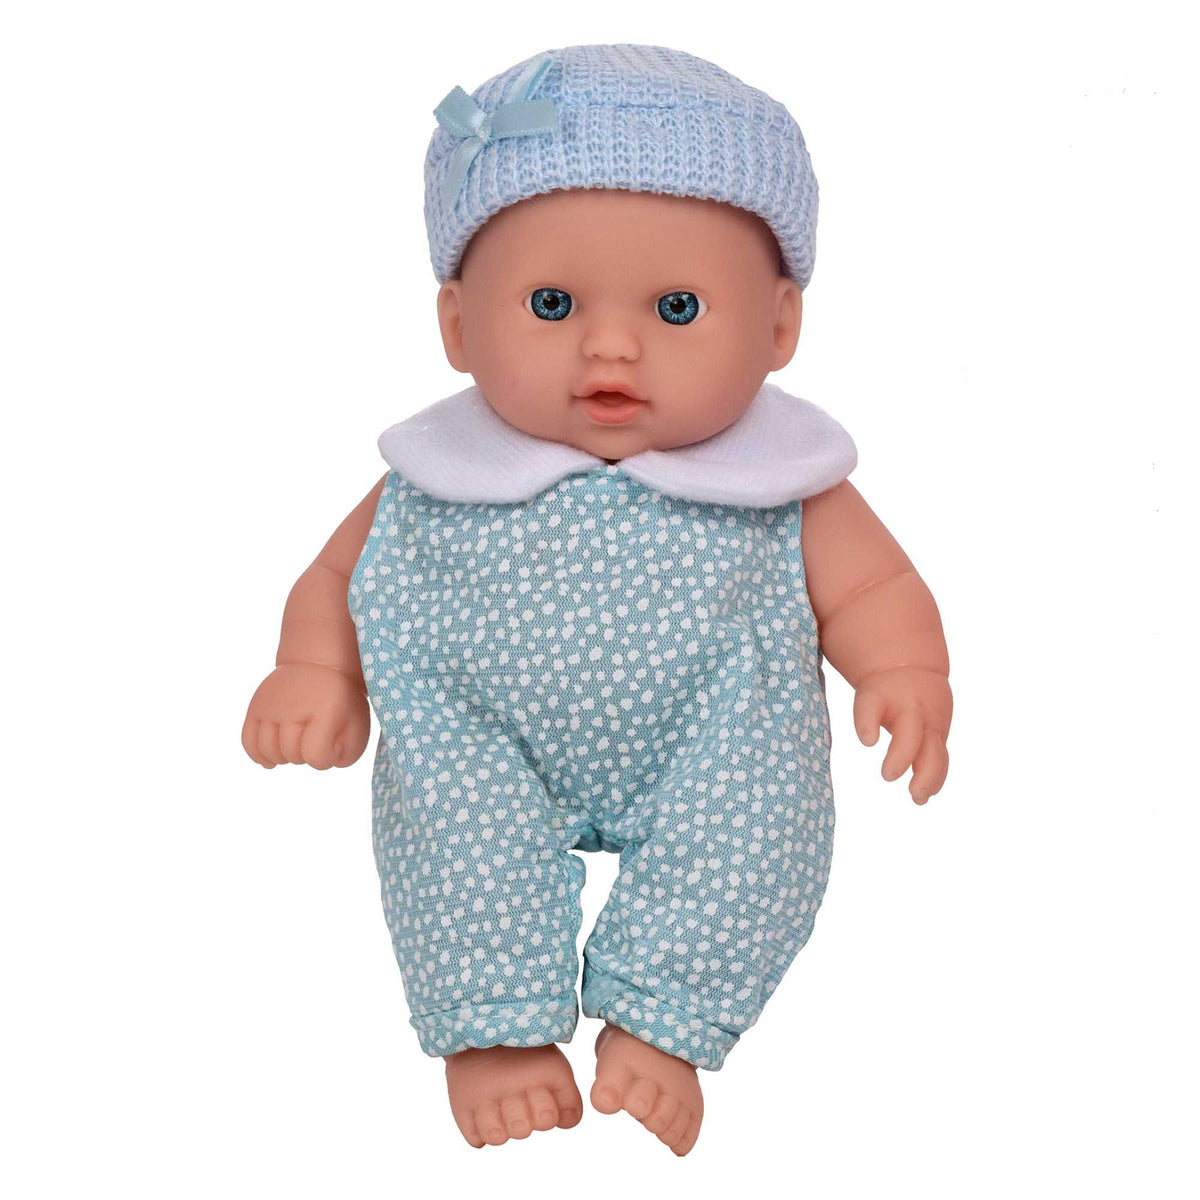 Babyboo Cutie Baby Doll - Blue